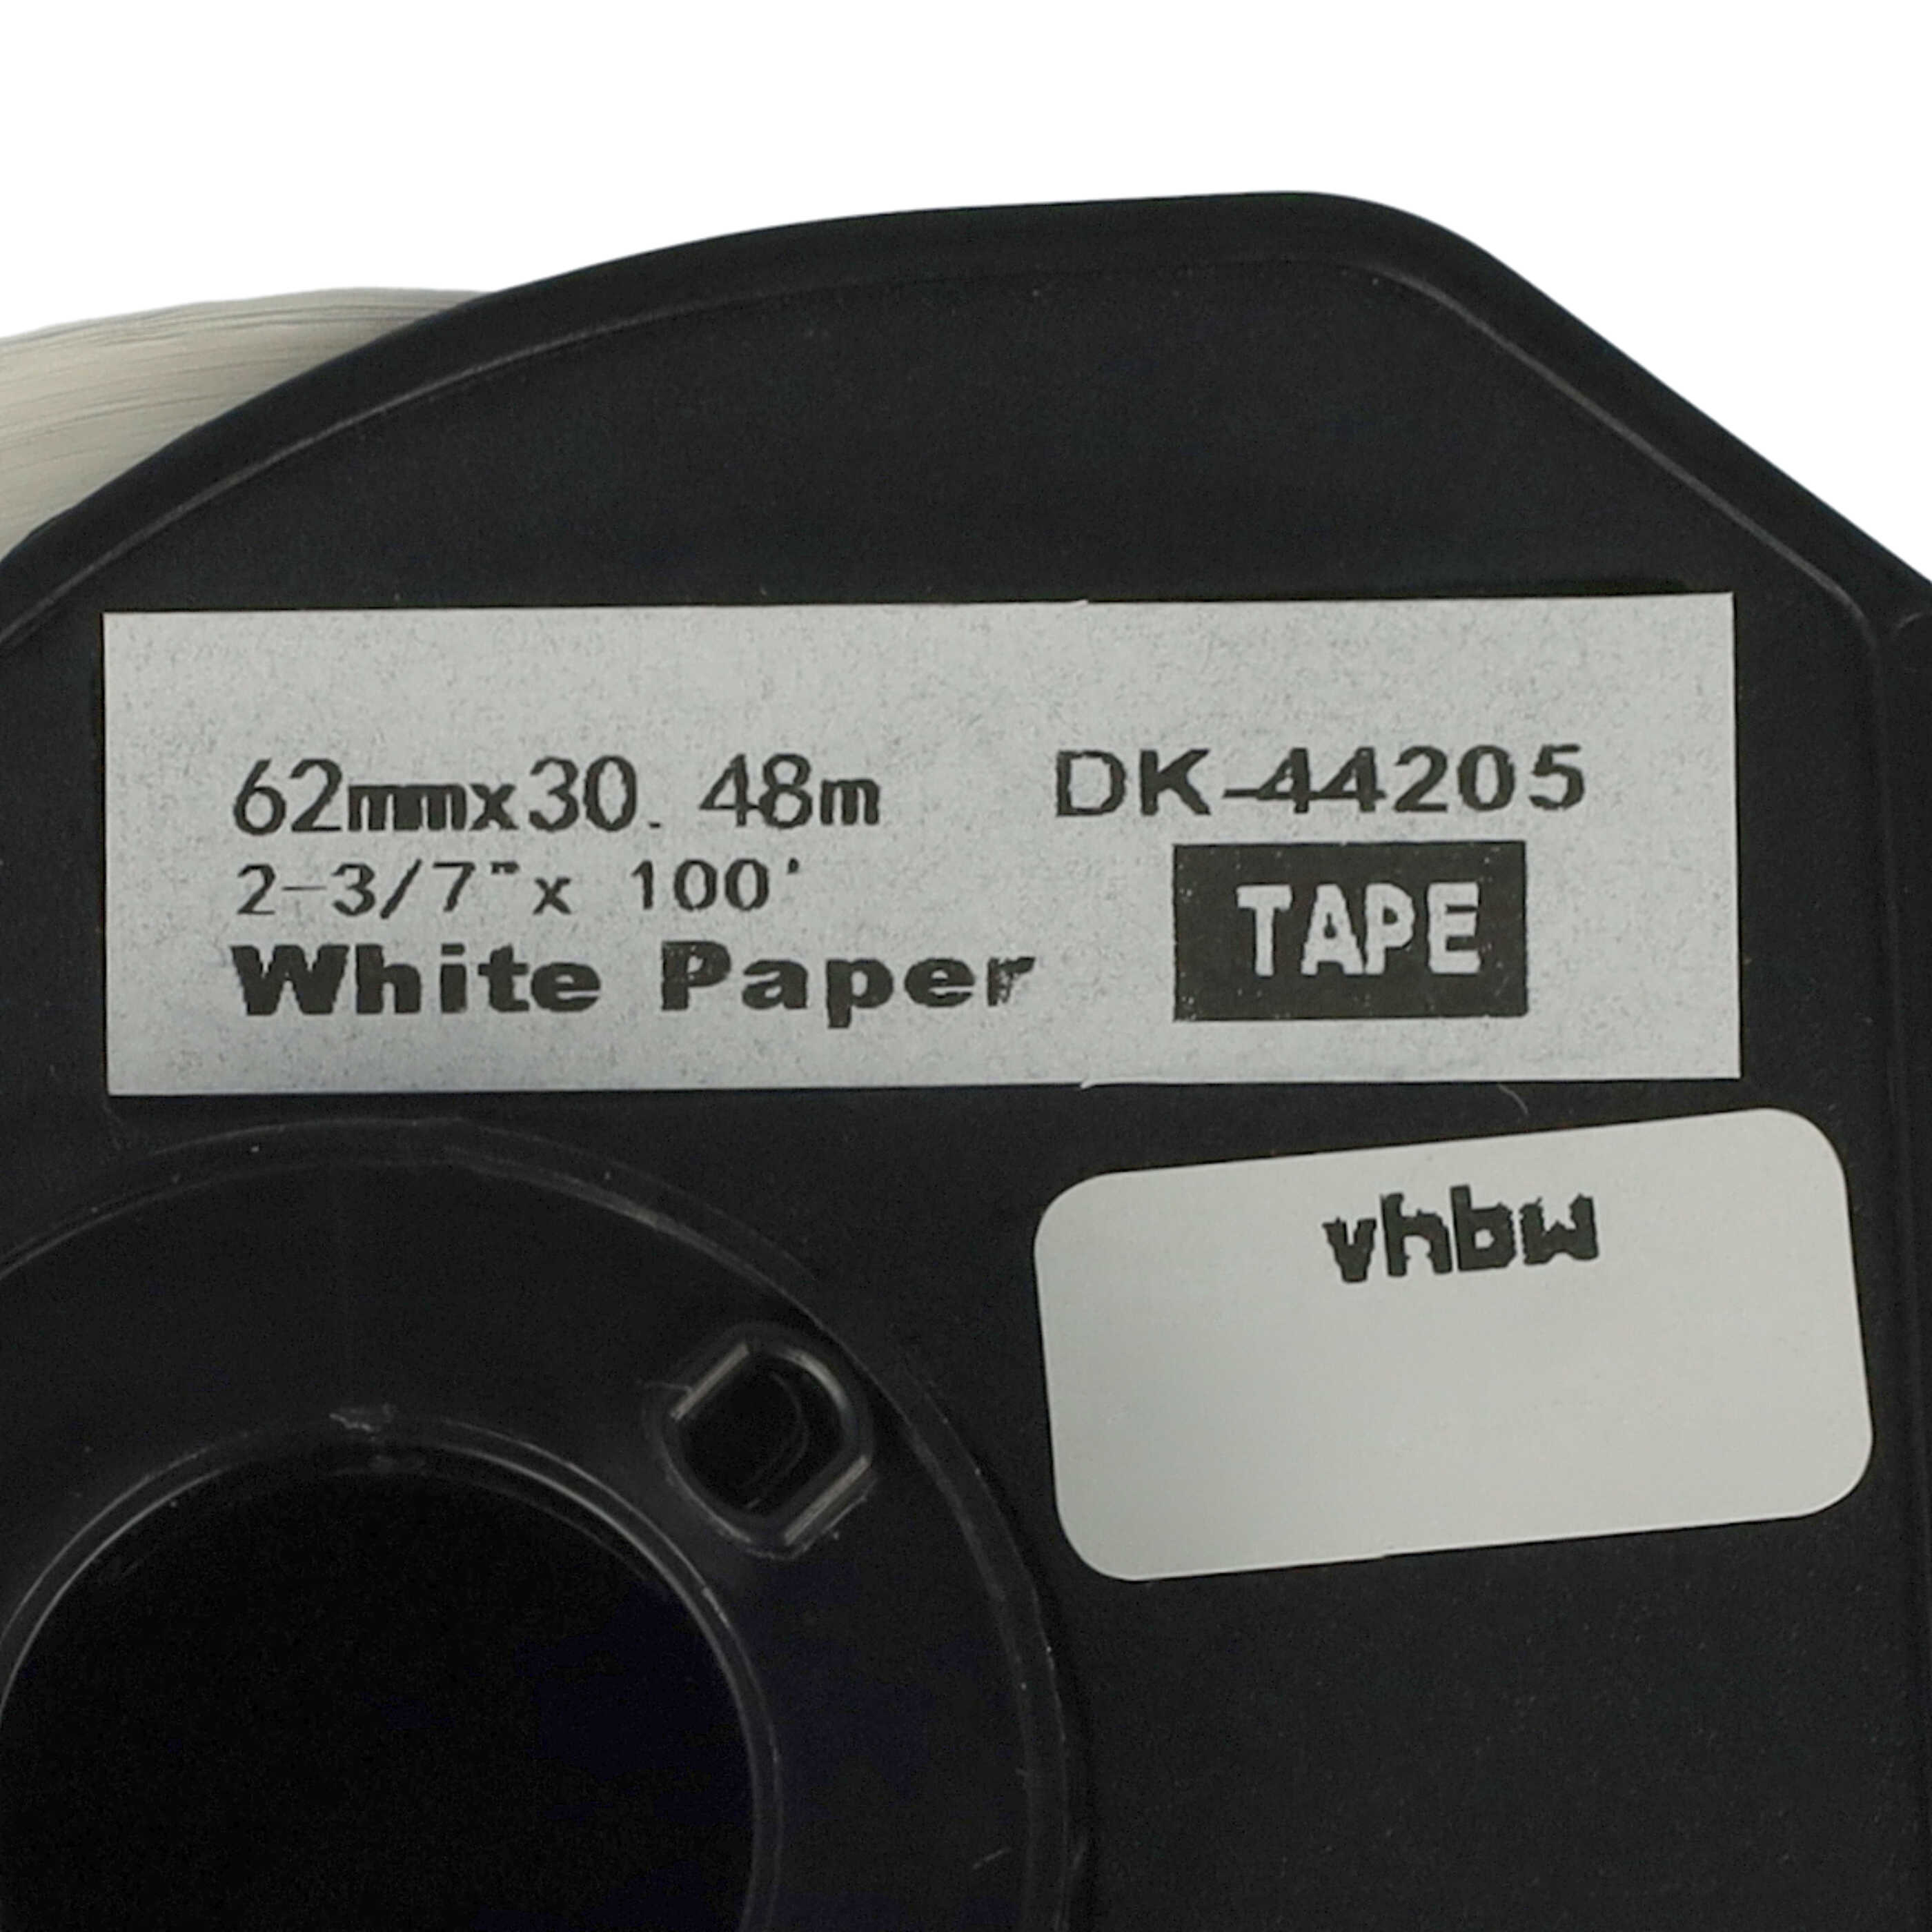 Rotolo etichette sostituisce Brother DK-44205 per etichettatrice - Premium 62mm x 30,48m + supporto